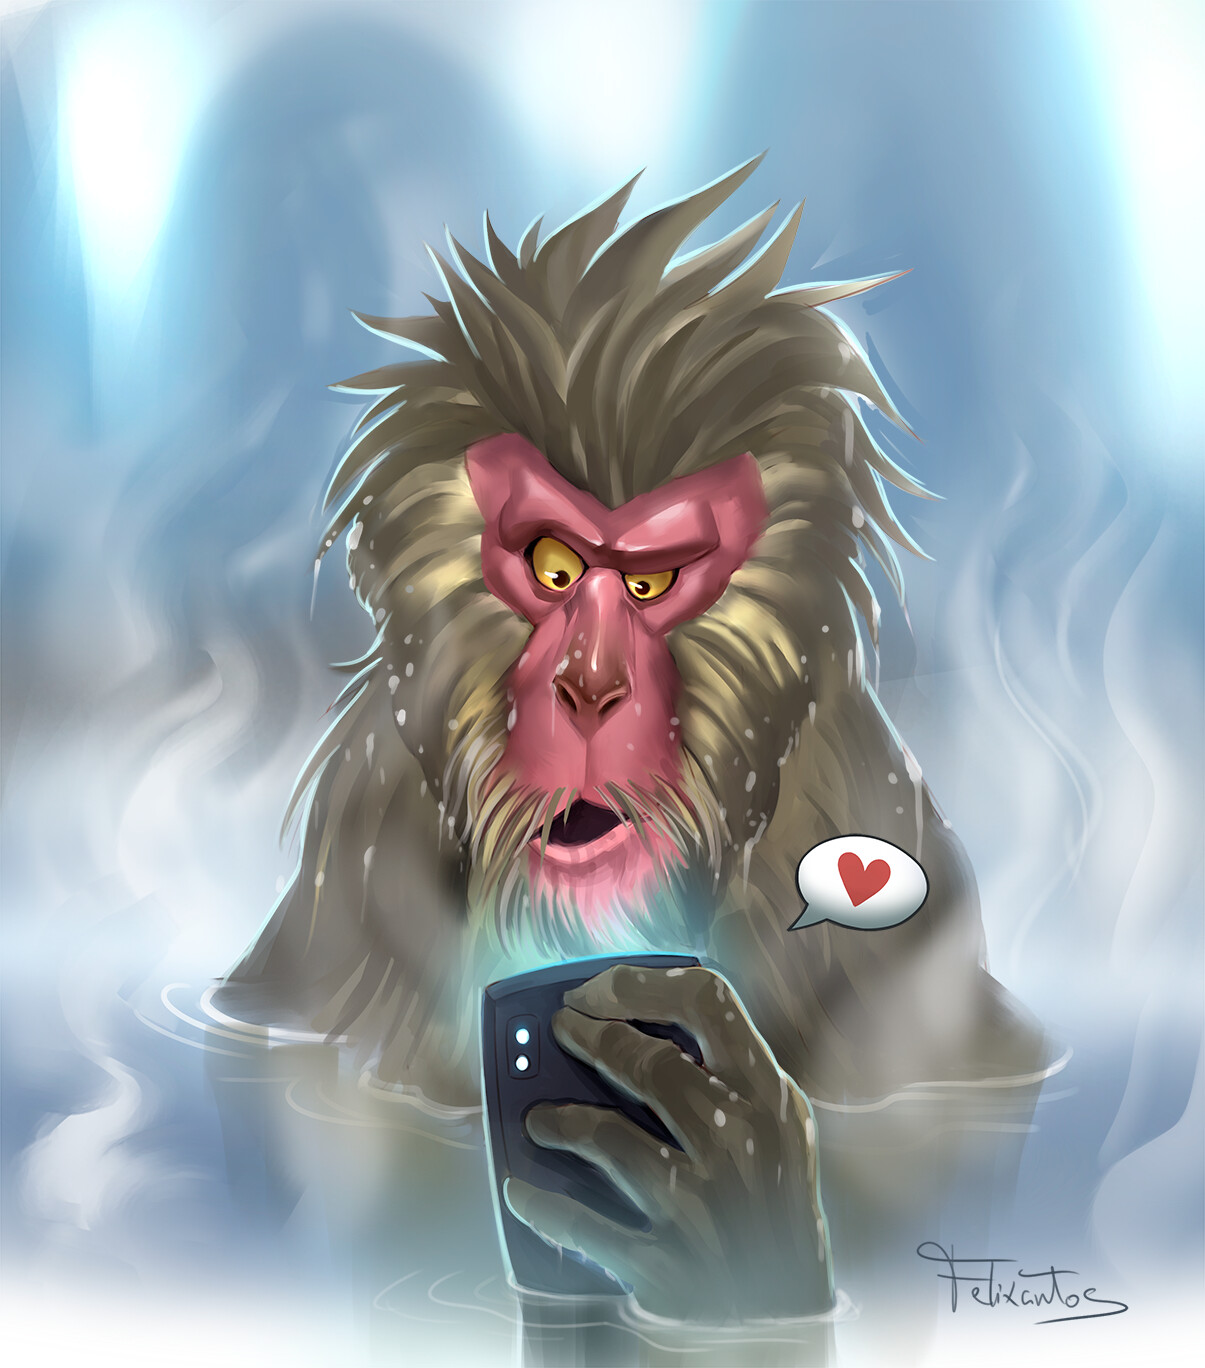 Macaco louco / Crazy Monkey by CaritNarib on DeviantArt